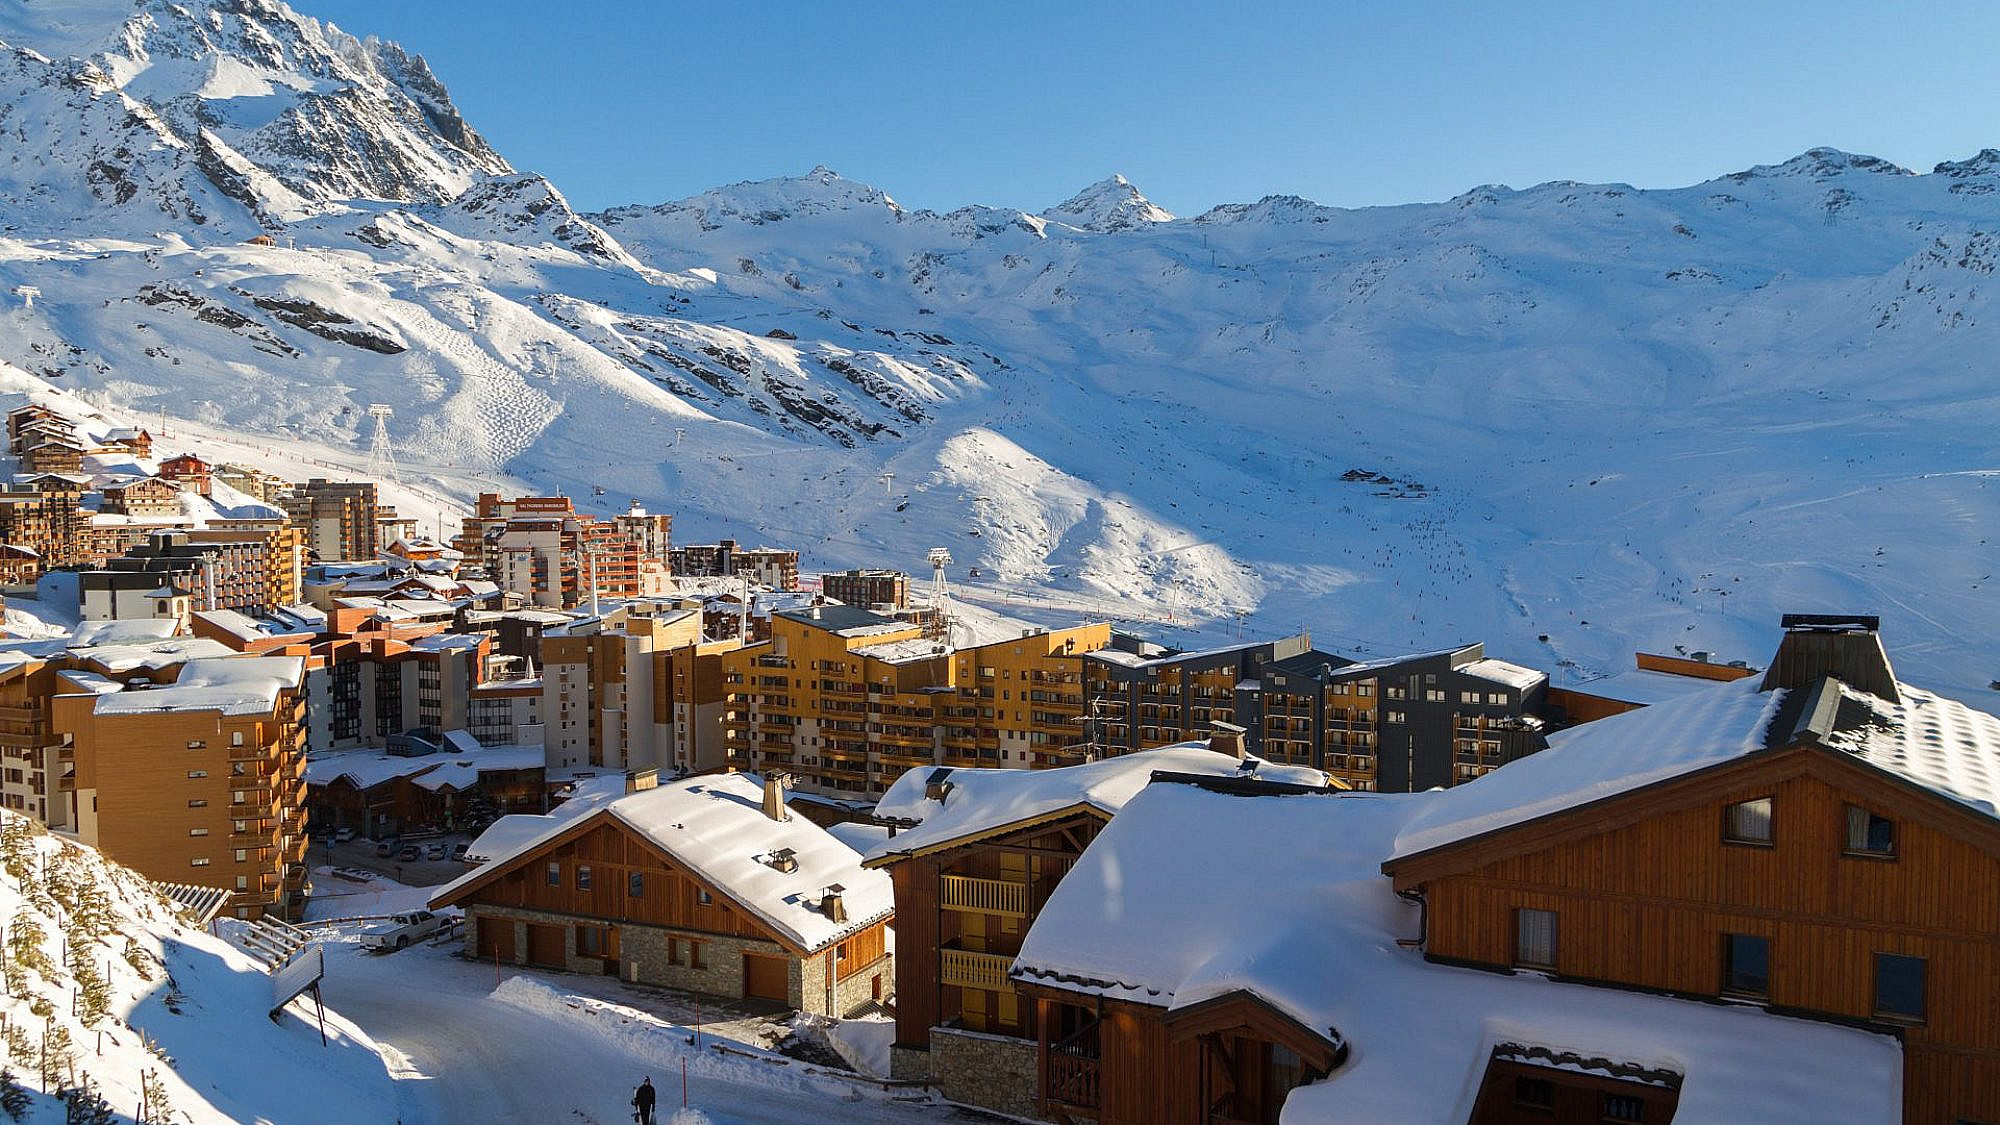 עיירת סקי ואל טורנס ממוקמת באזור "שלושת העמקים" הסמוך לגבול איטליה | צילום: shutterstock